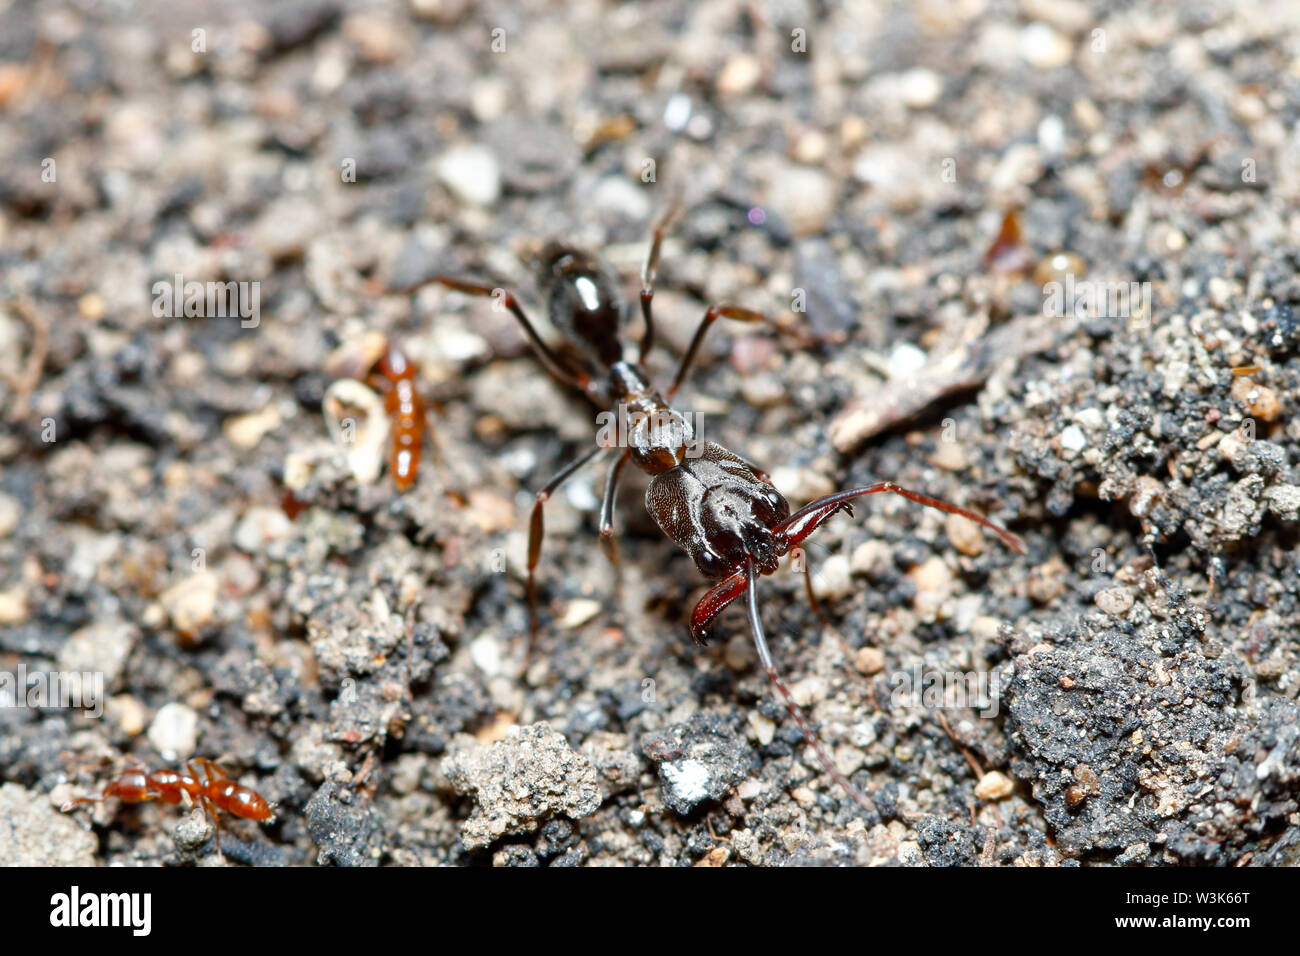 Trap-jaw Ant (Odontomachus simillimus) eine große kräftige Kiefer ant, aus Thailand / Südostasien berücksichtigt Stockfoto